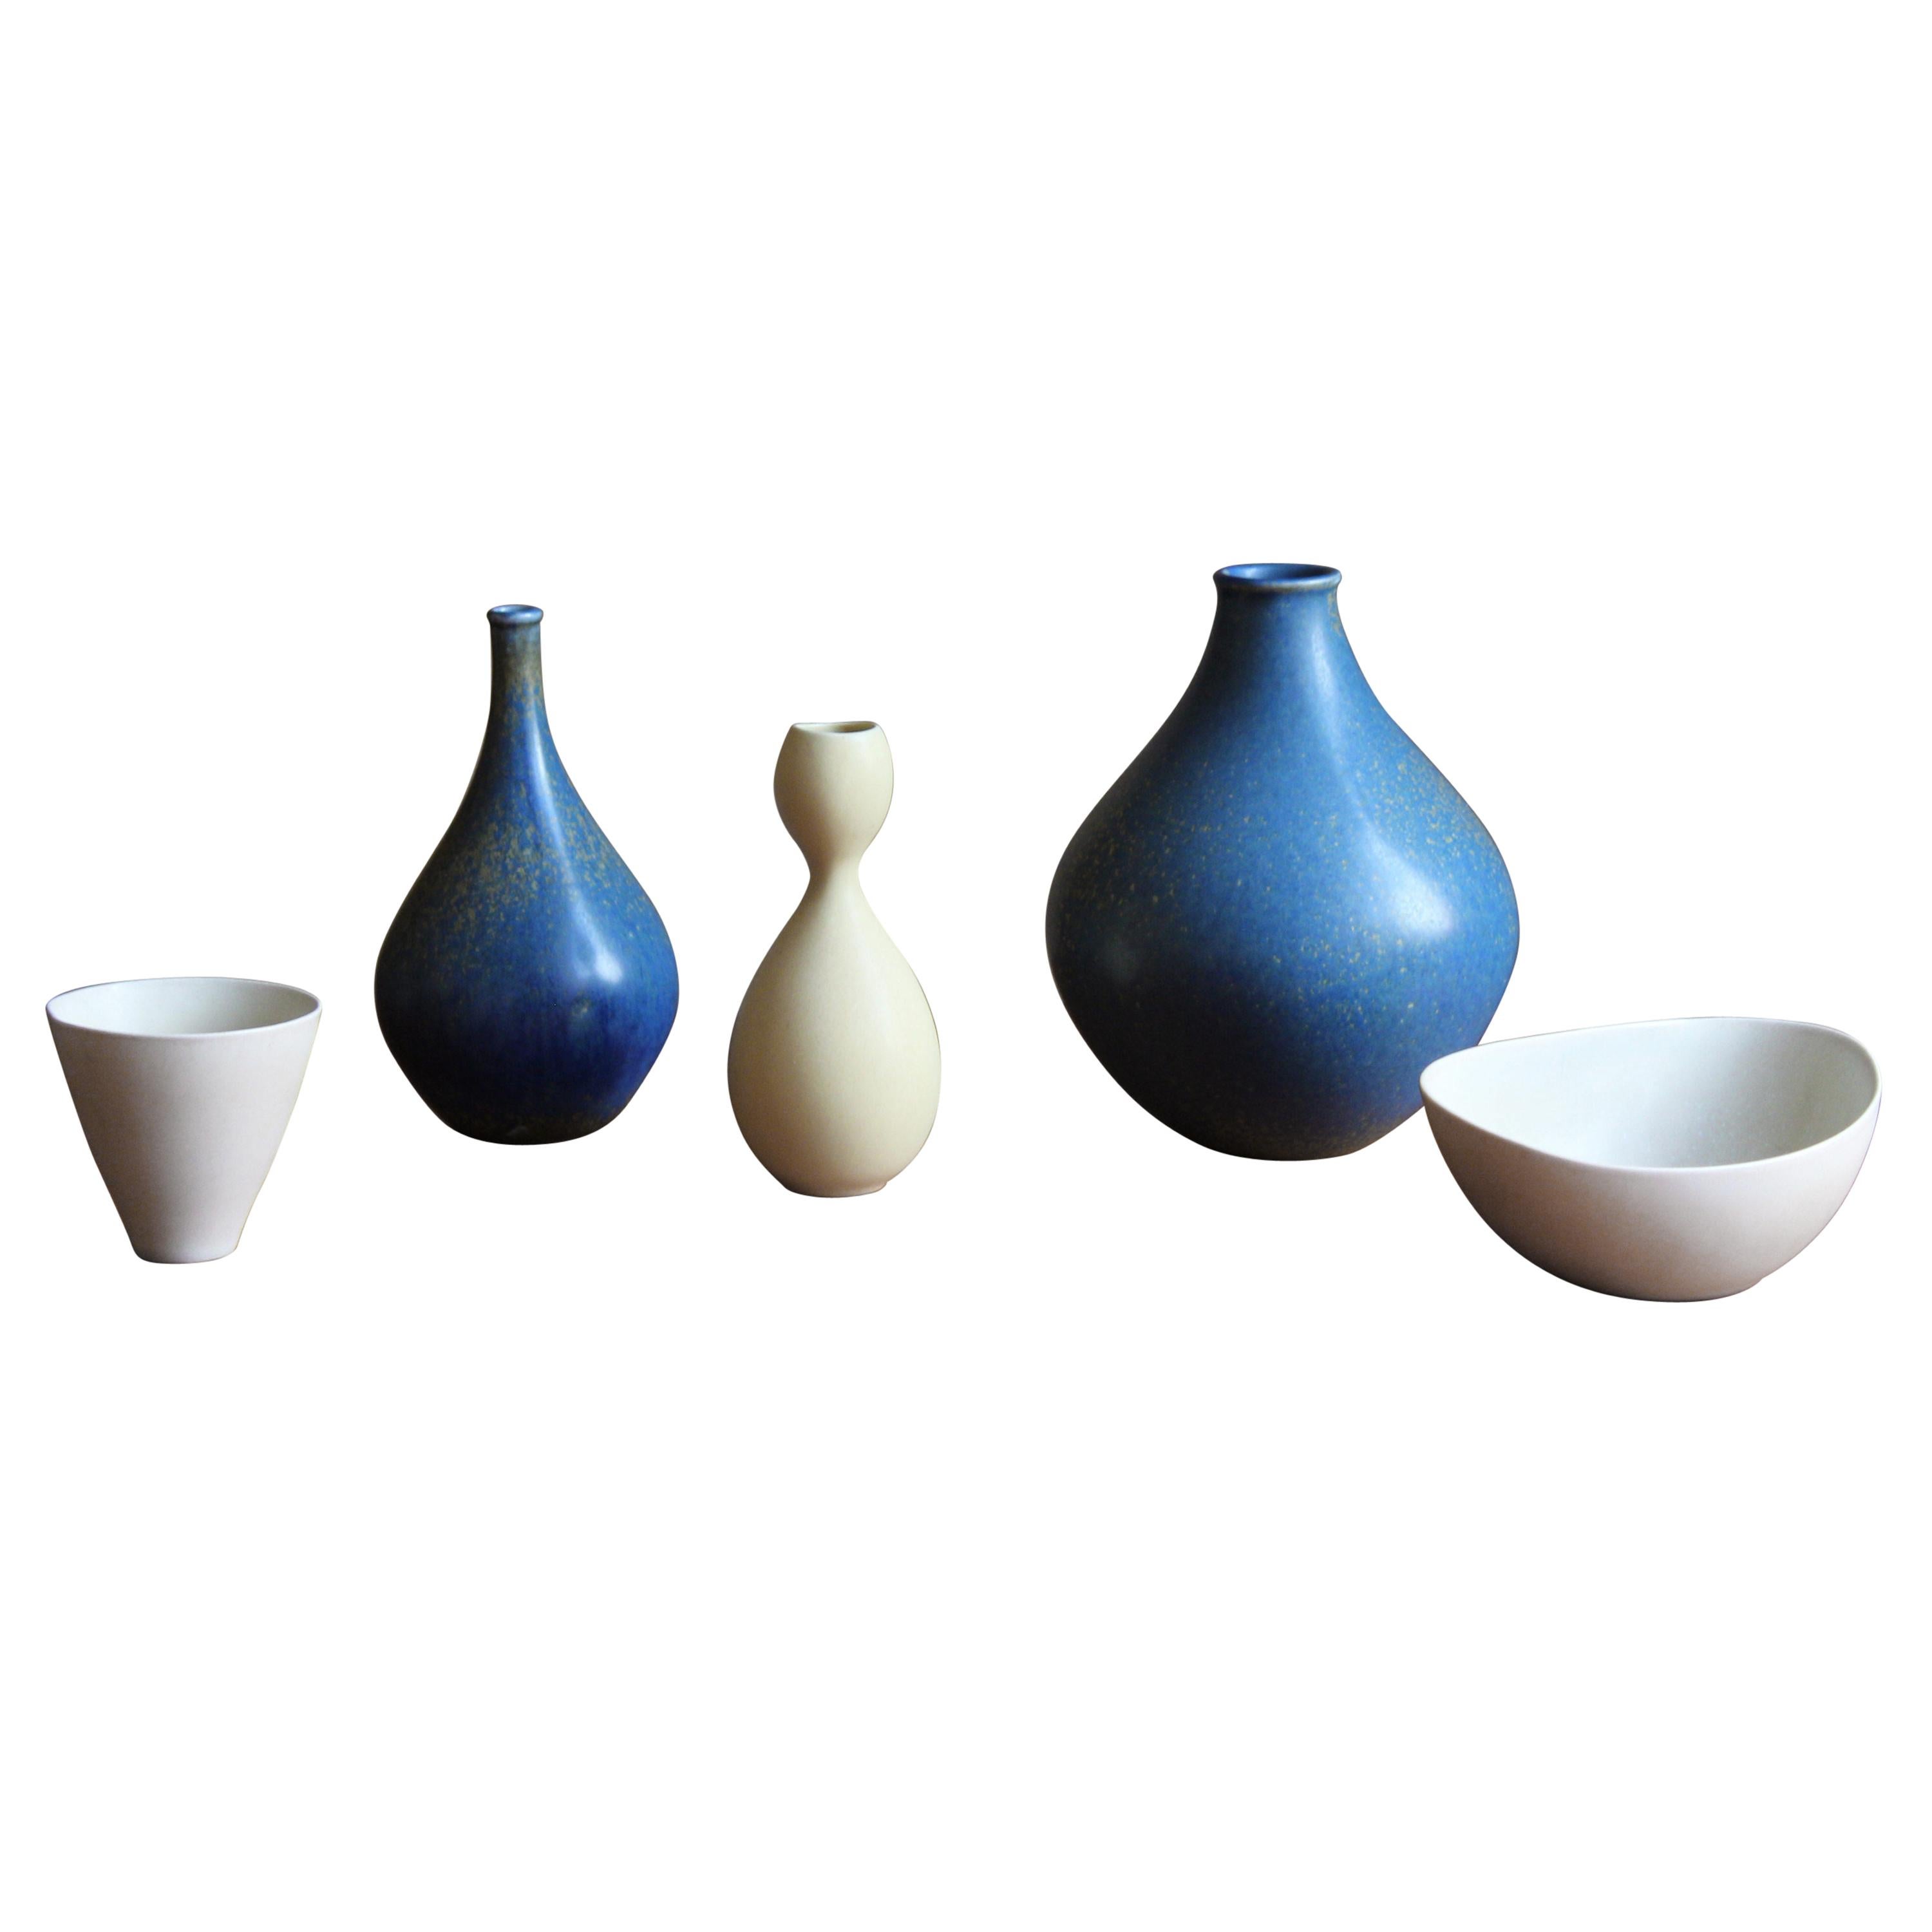 Stig Lindberg, Organic Vases, Stoneware, Gustavsberg, Sweden, 1950s